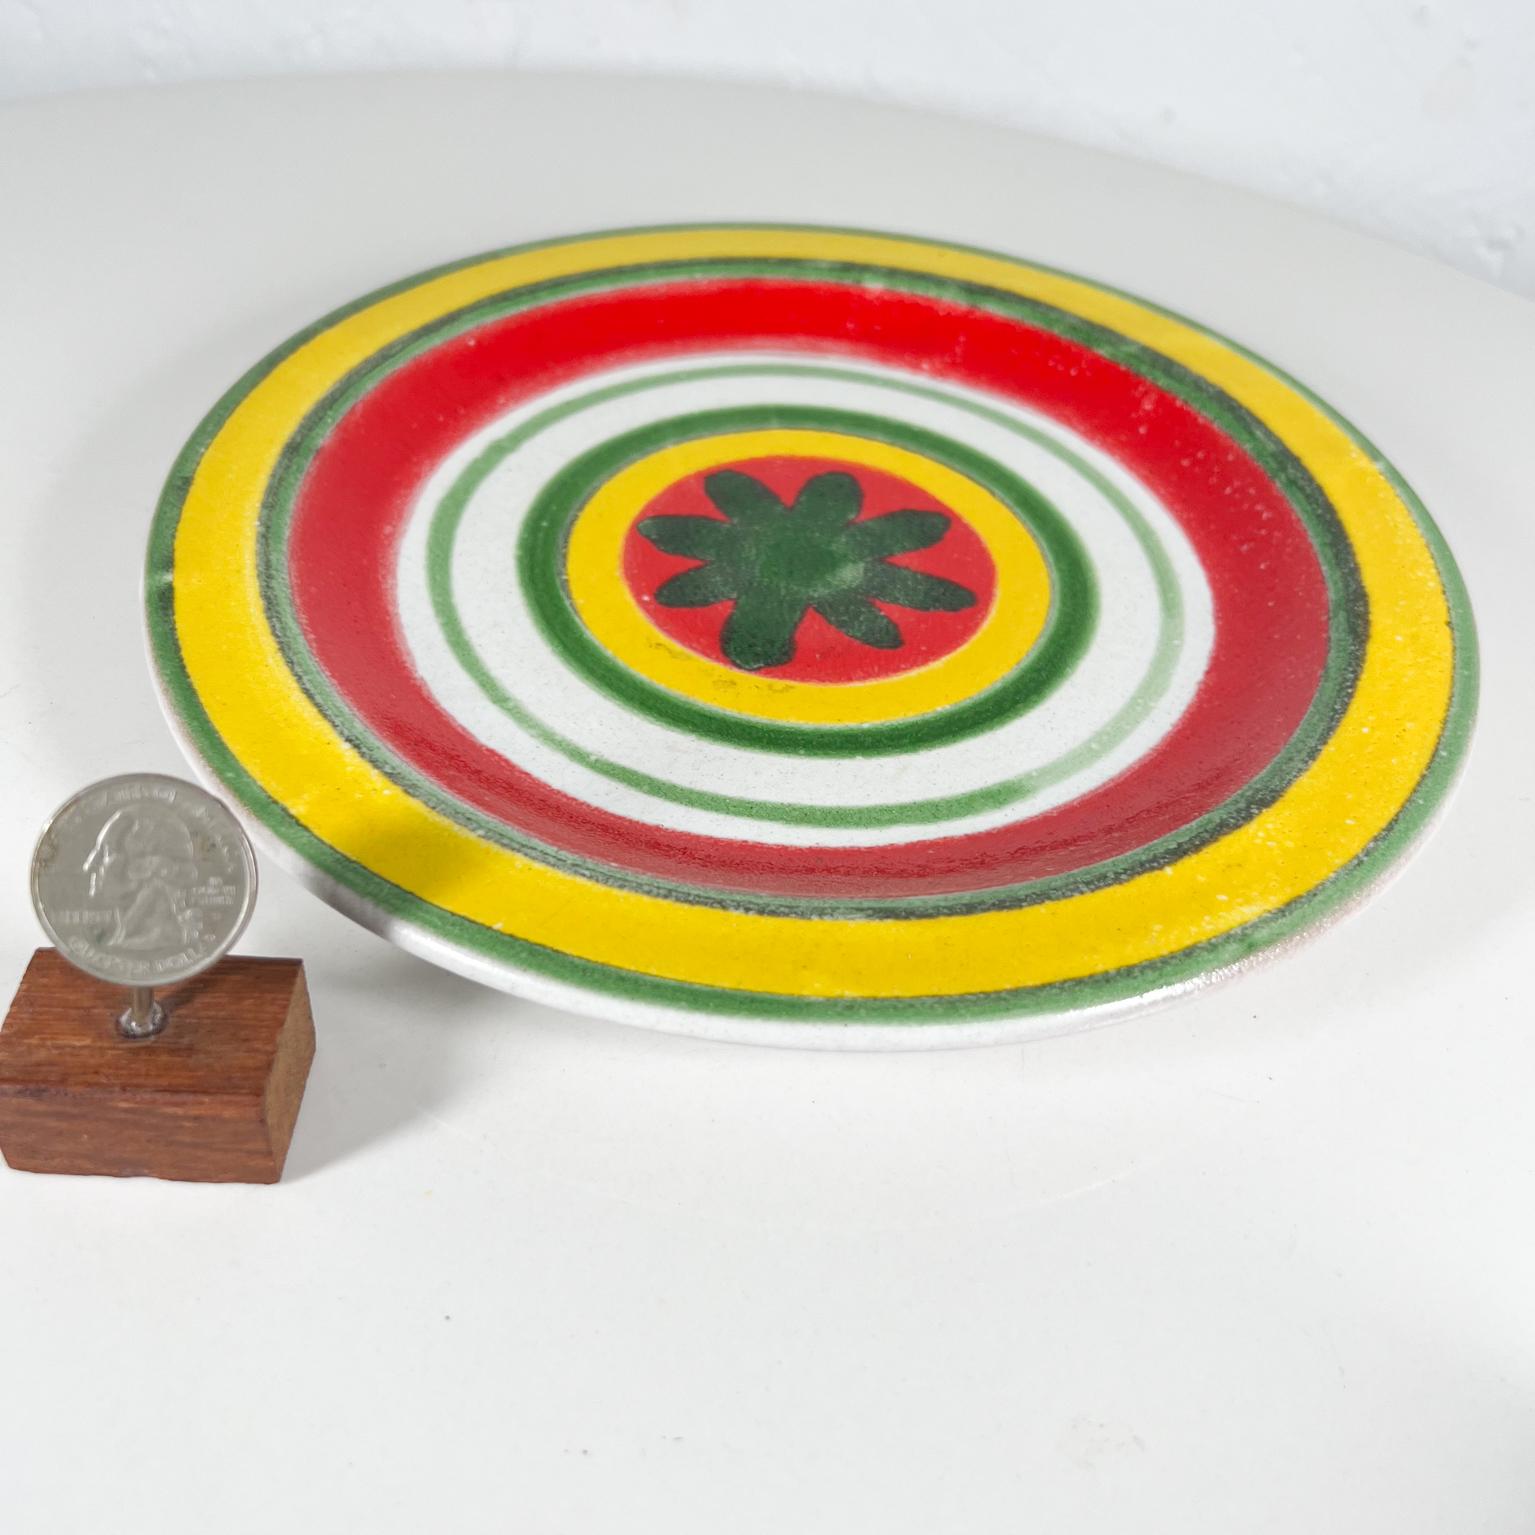 Desimone Keramik-Keramik-Töpferwaren Italien, handbemalt, Gelb, Rot, Grün (Italienisch)